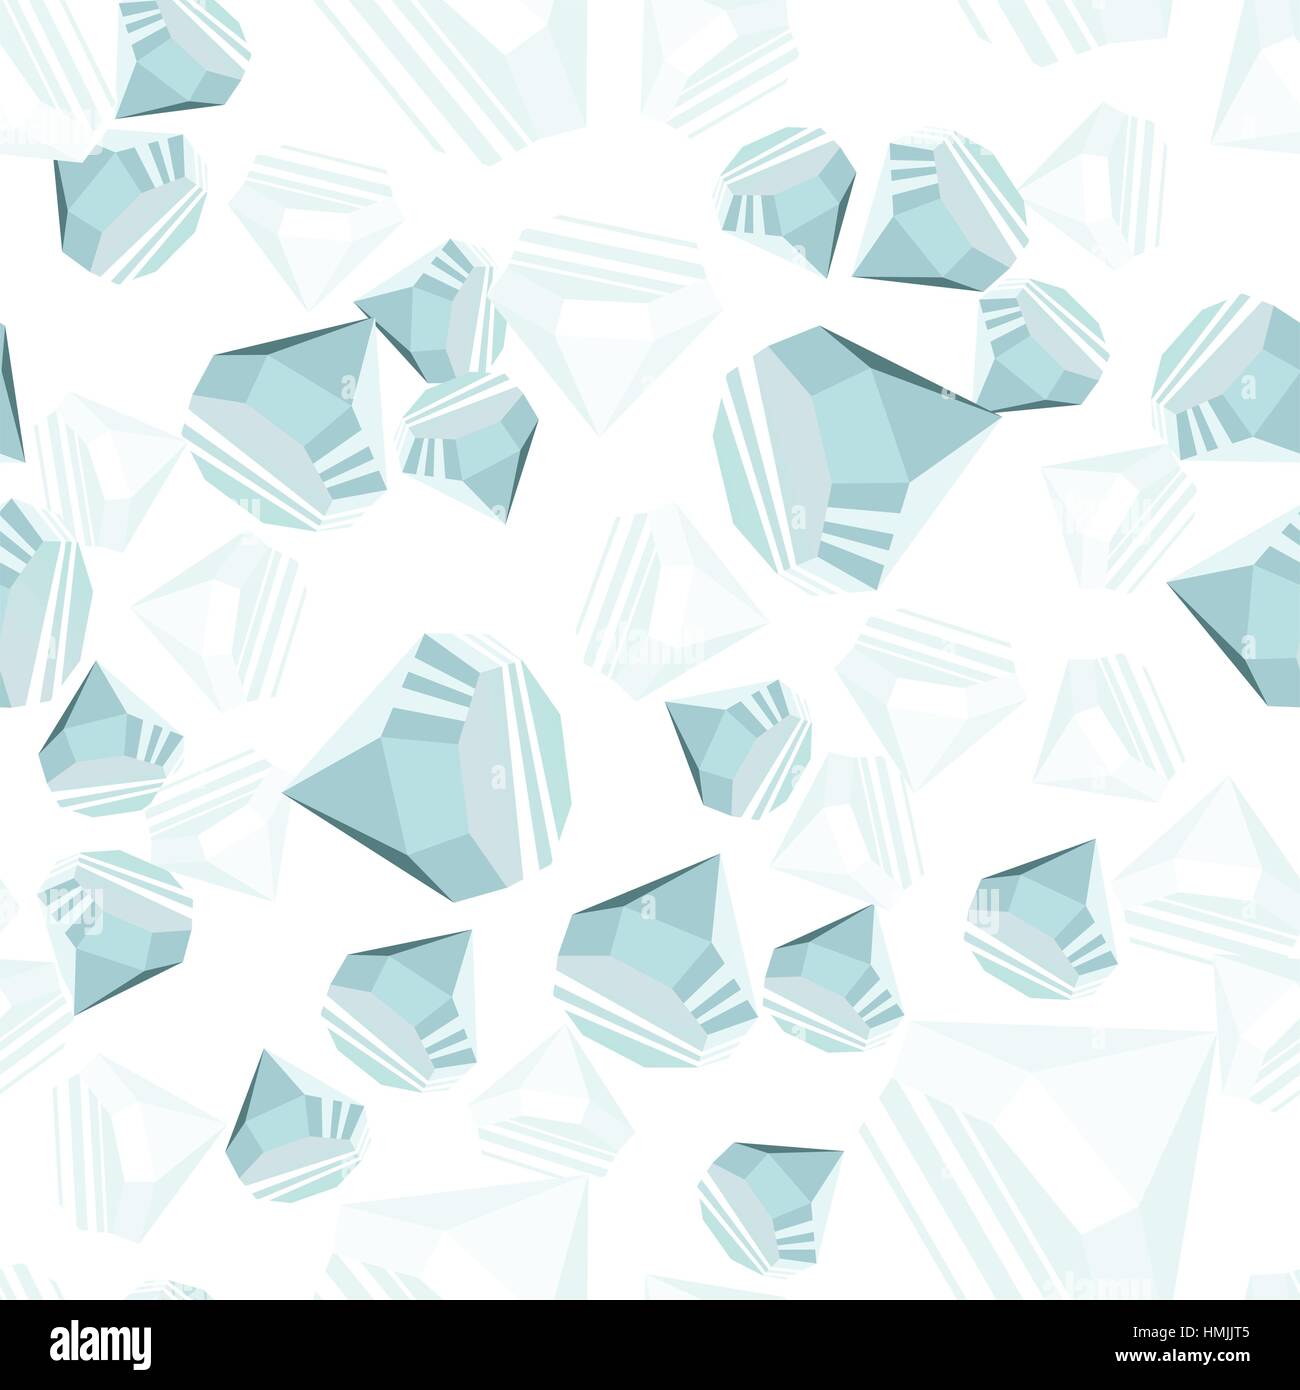 Diamanti casualmente posizionati su sfondo bianco seamless pattern. Crystal clear gioielli brillante ripetendo la texture. EPS8 illustrazione vettoriale. Illustrazione Vettoriale